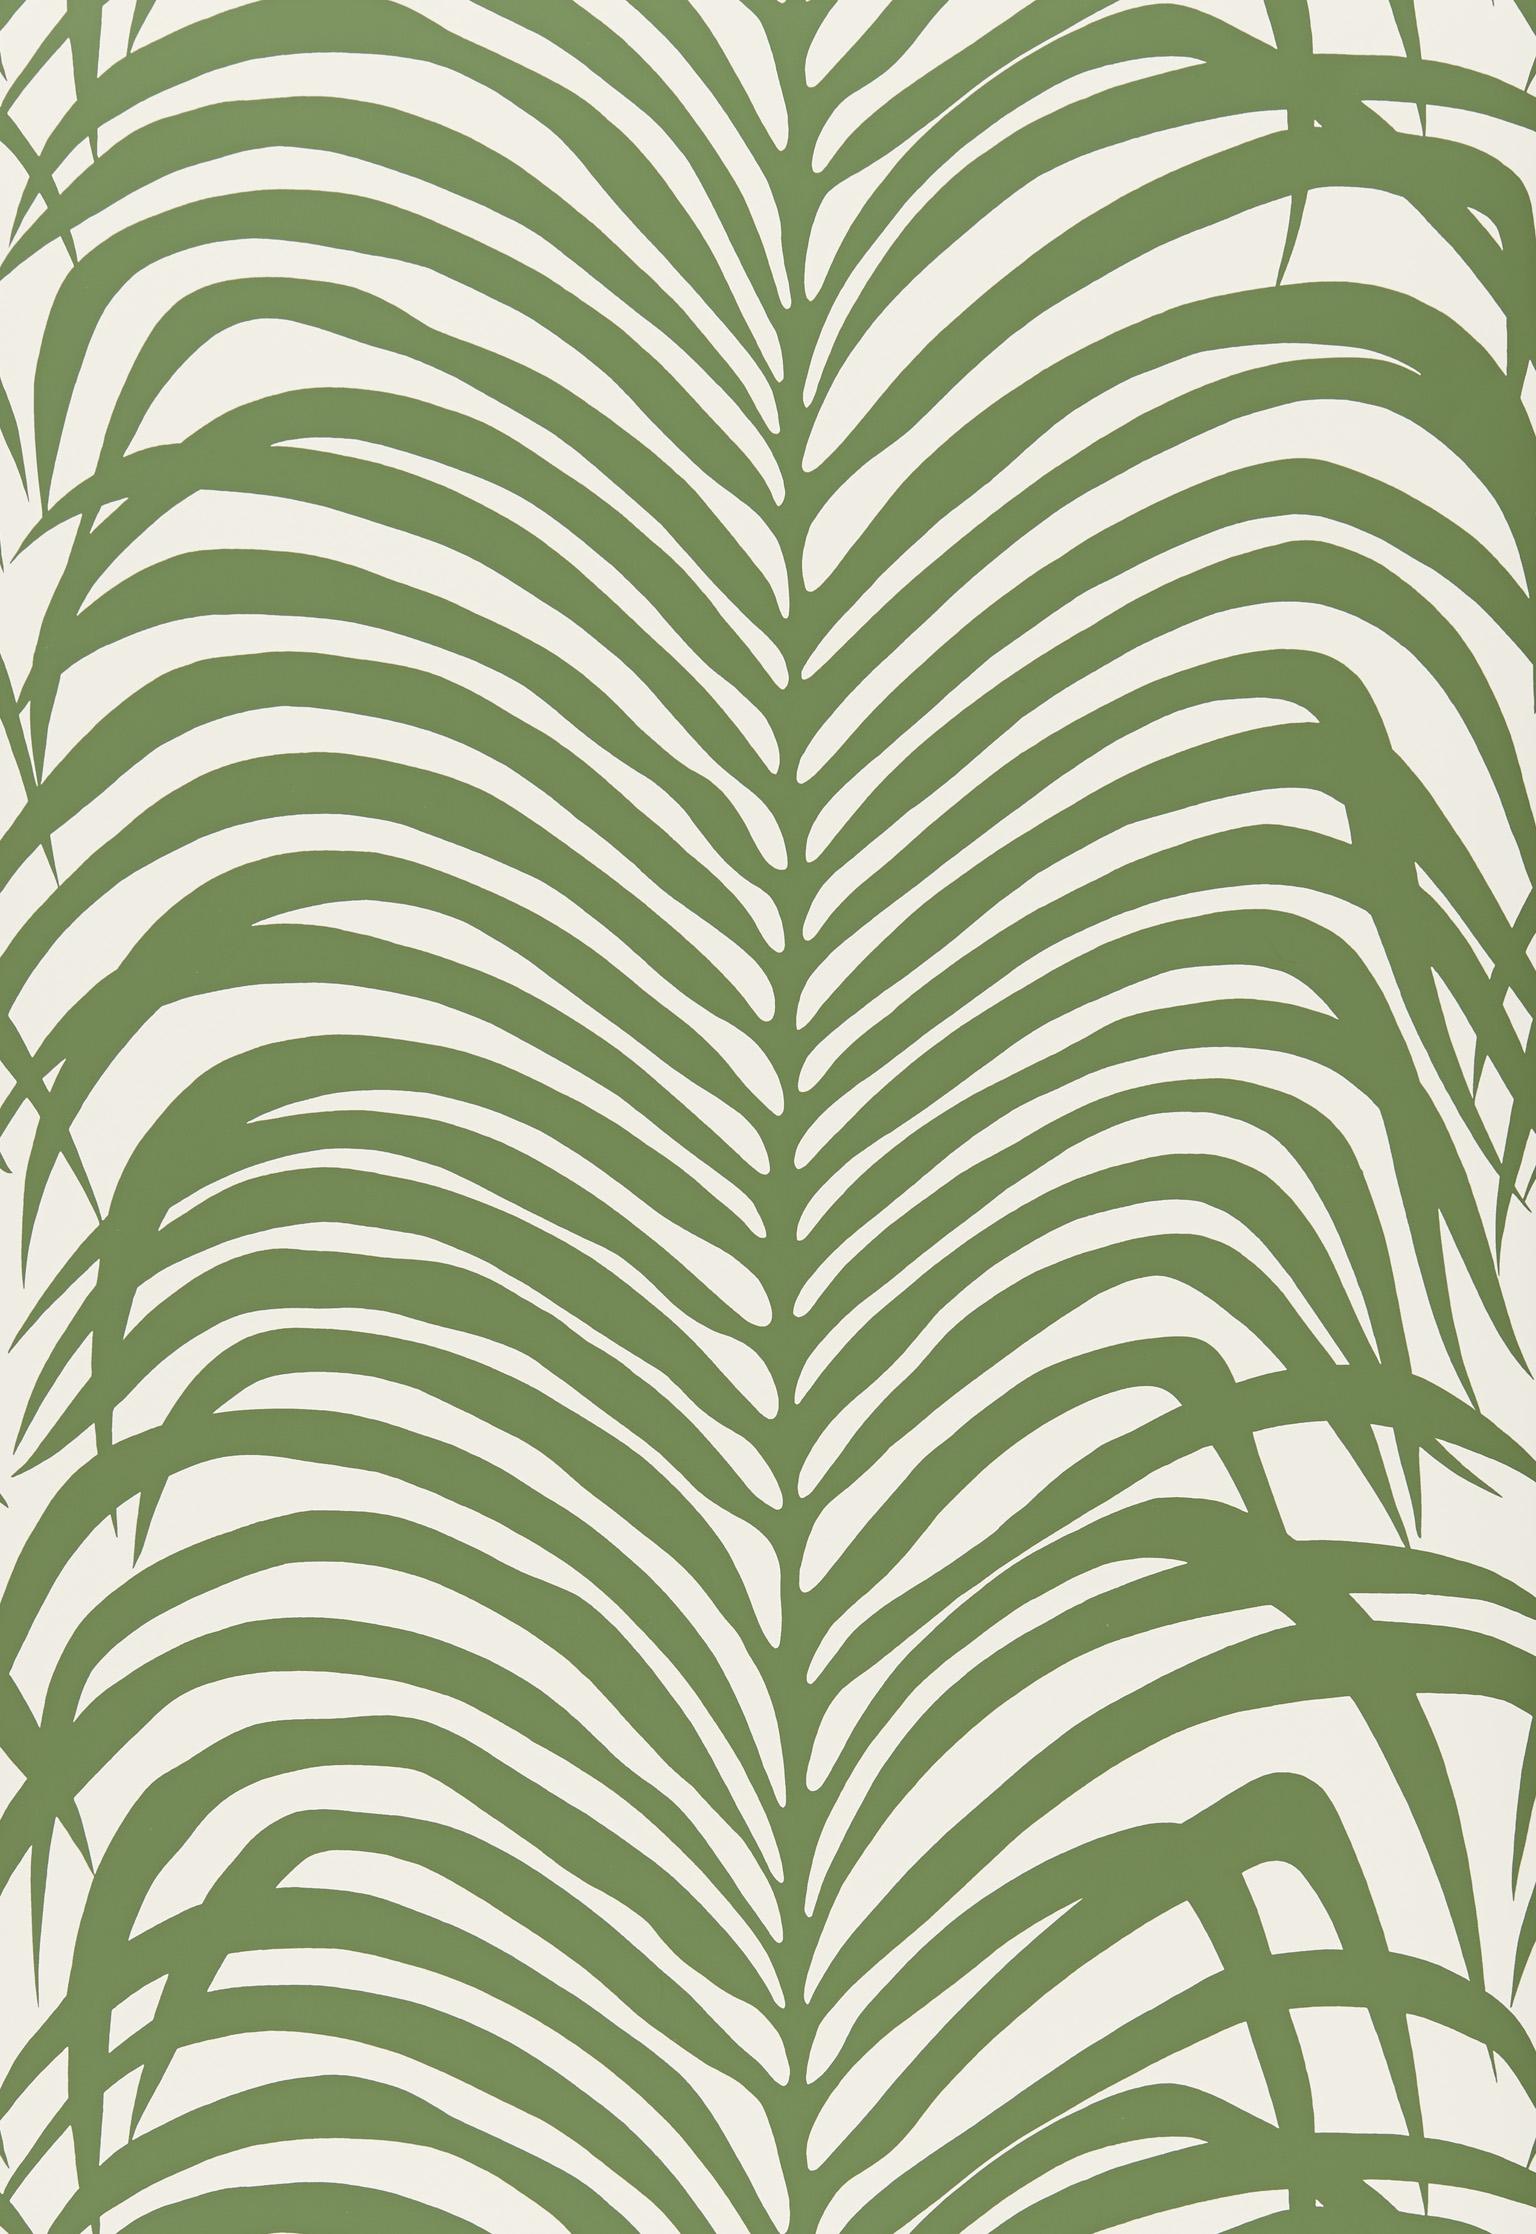 Un hybride saisissant qui rappelle à la fois les rayures zébrées et les feuilles de palmier tropicales, ce motif sauvage et merveilleux est disponible sous forme de tissu et de revêtement mural.

Depuis la création de Schumacher en 1889, notre